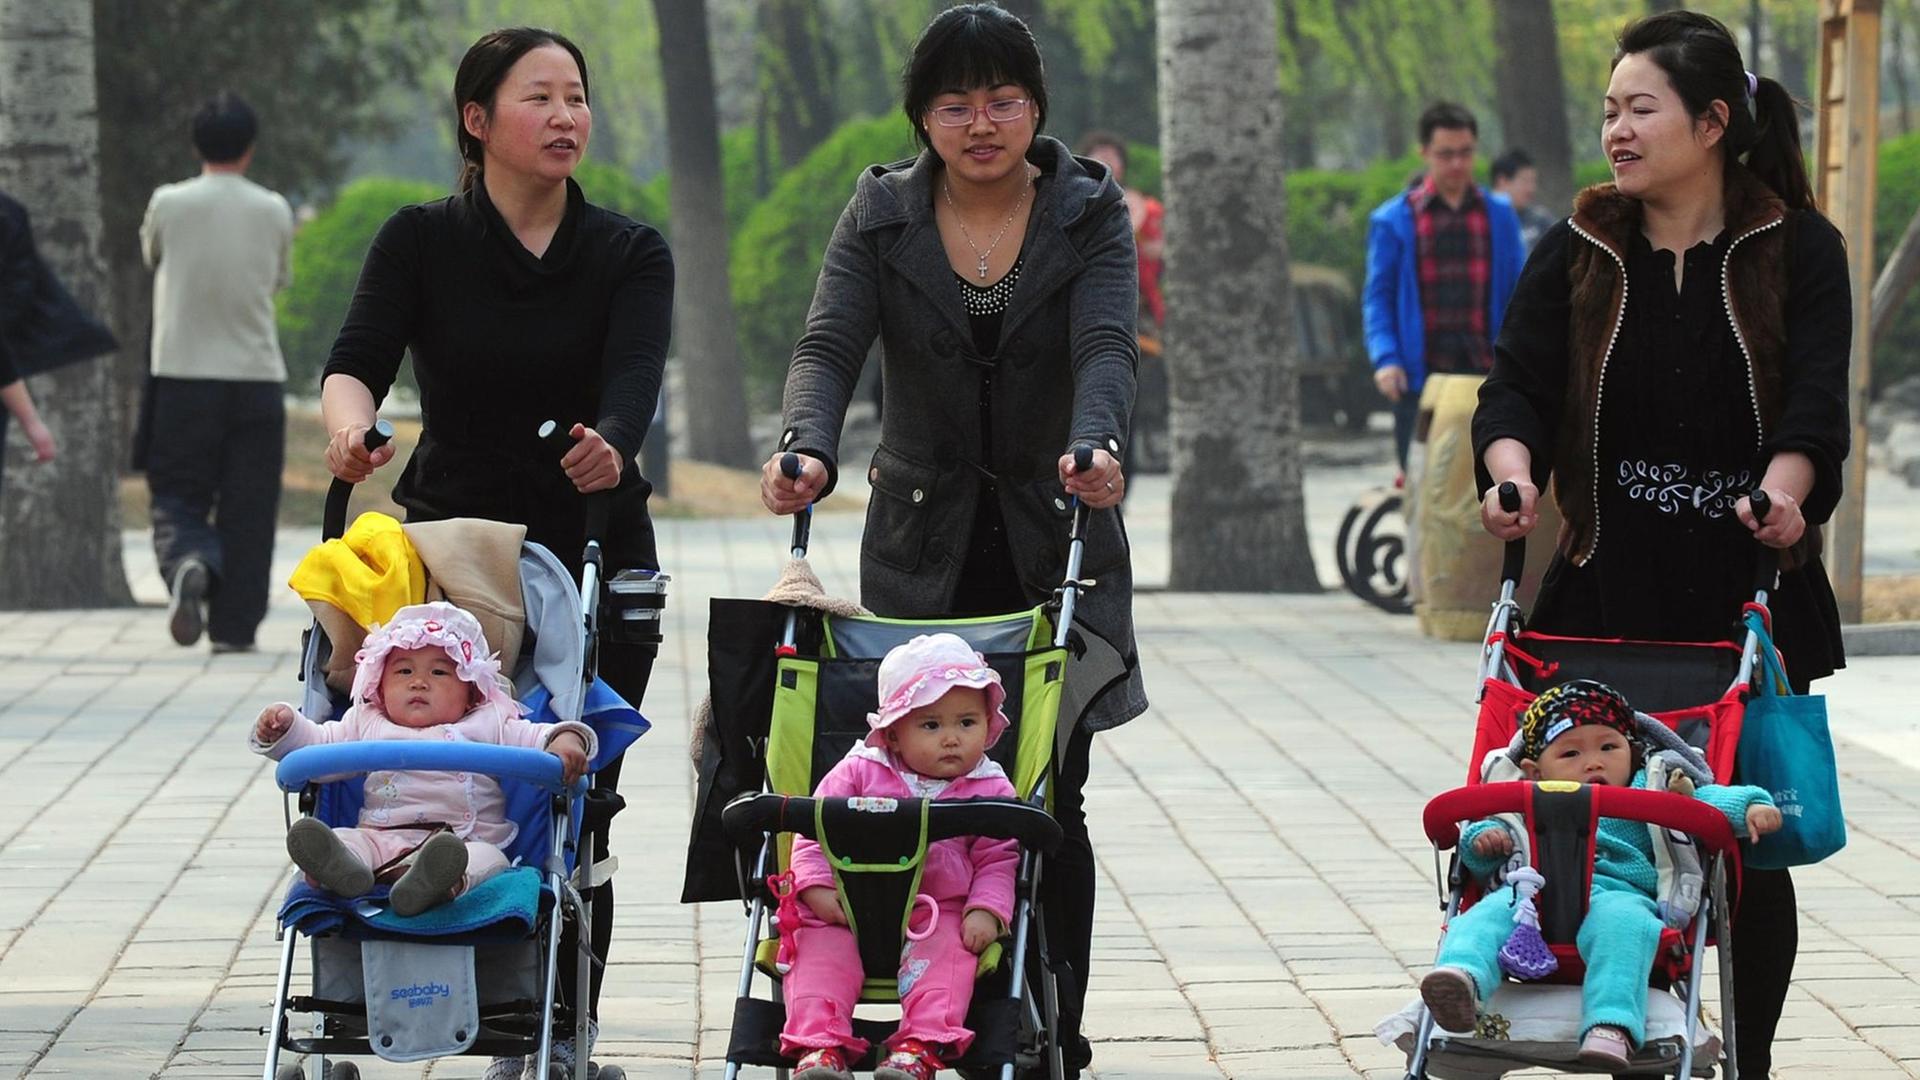 Drei Frauen gehen mit Kinderwagen durch einen Park.